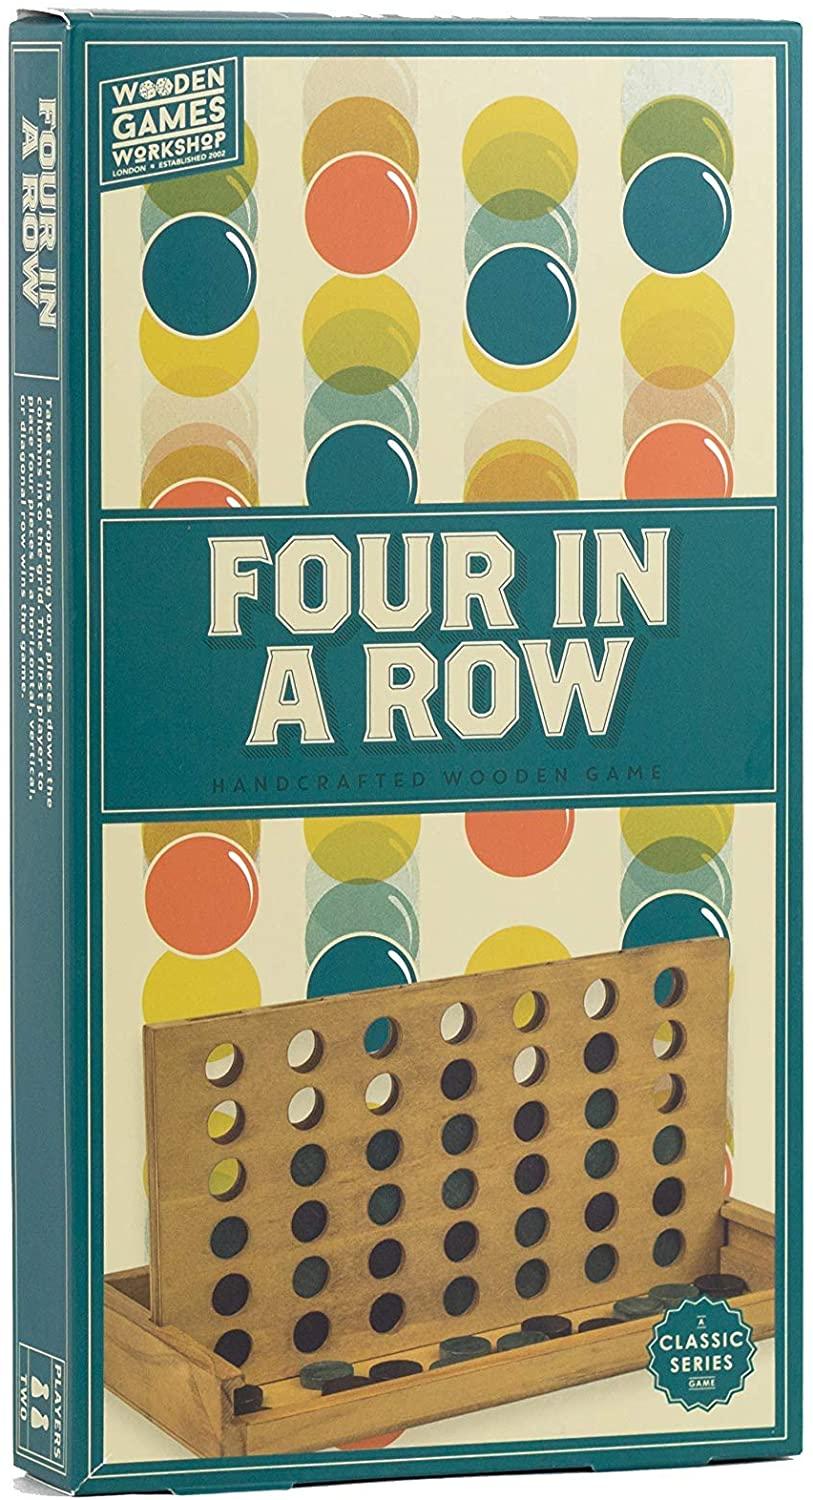 لعبة أربعة في الصف الكلاسيكية Professor Puzzle - WOODEN FOUR-IN-A-ROW Classic Board Game - cG9zdDo1ODI0Mg==